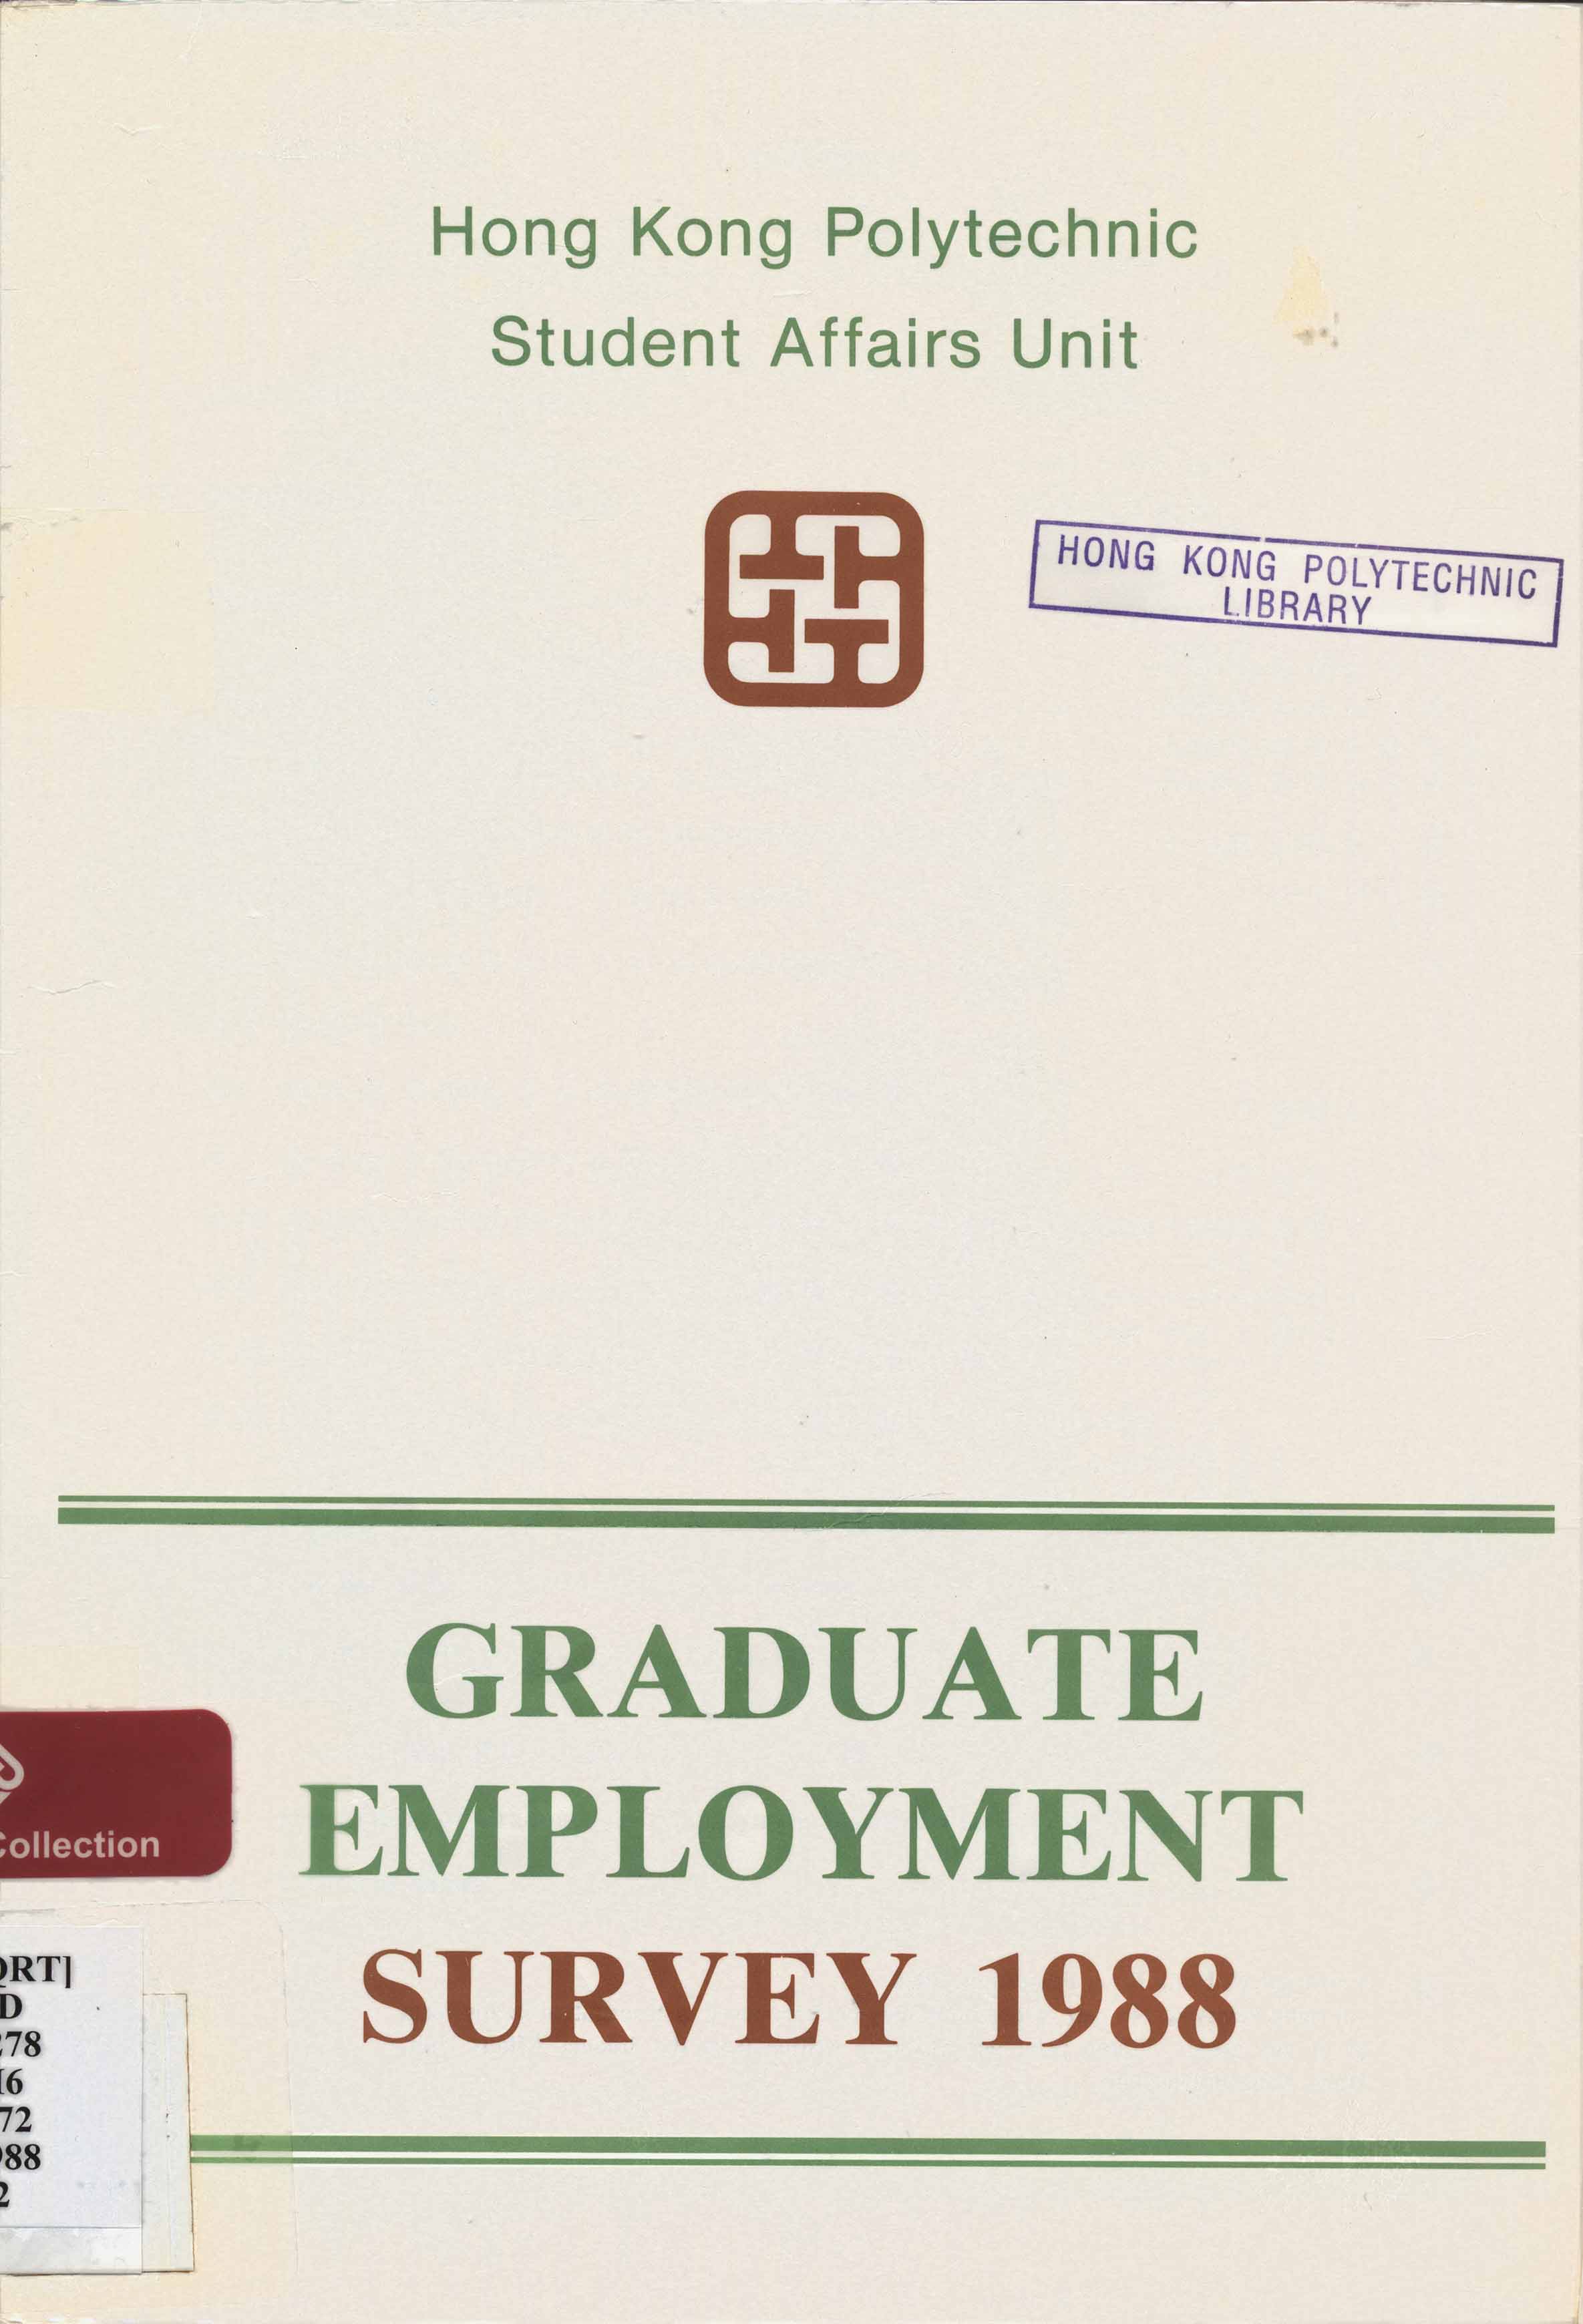 Graduate employment survey 1988